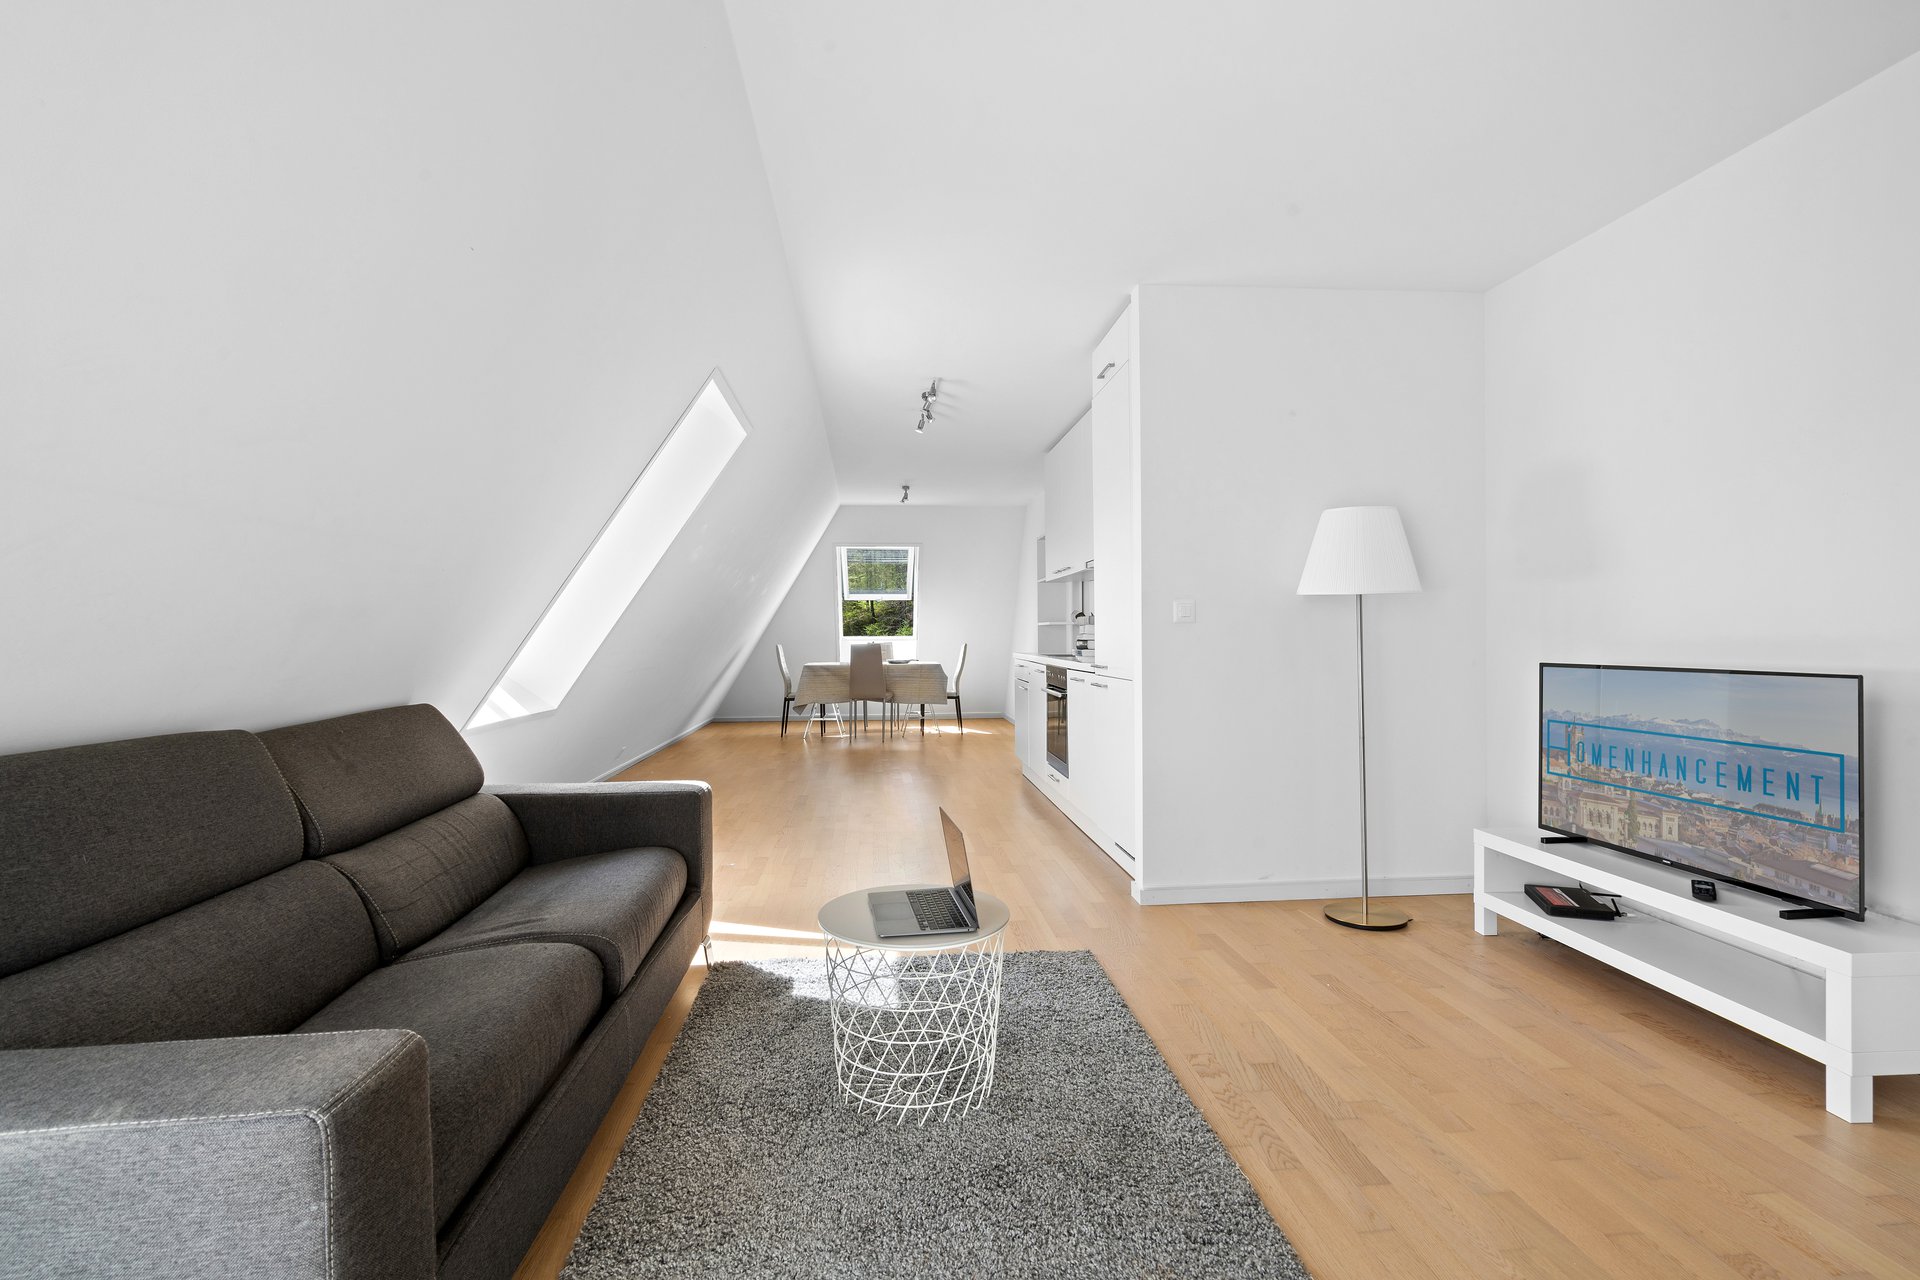 Appartement d'une chambre situé sur les hauteurs de Lausanne, dans le quartier de La Sallaz, proche du bois de Sauvabelin et